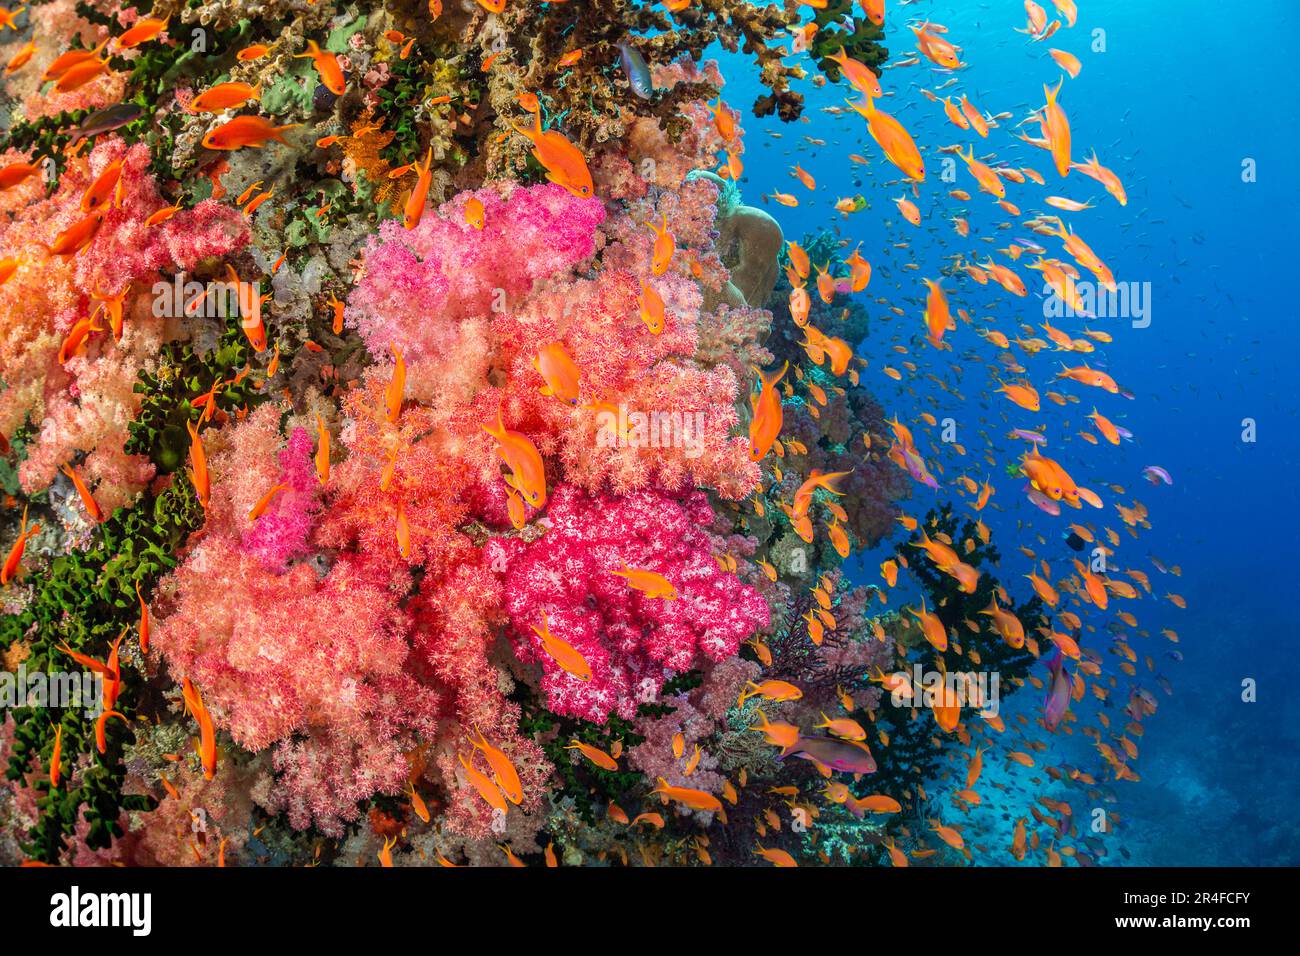 Le corail mou alcyonarien avec des anthias scolaires domine cette scène de récif fidjien. Banque D'Images